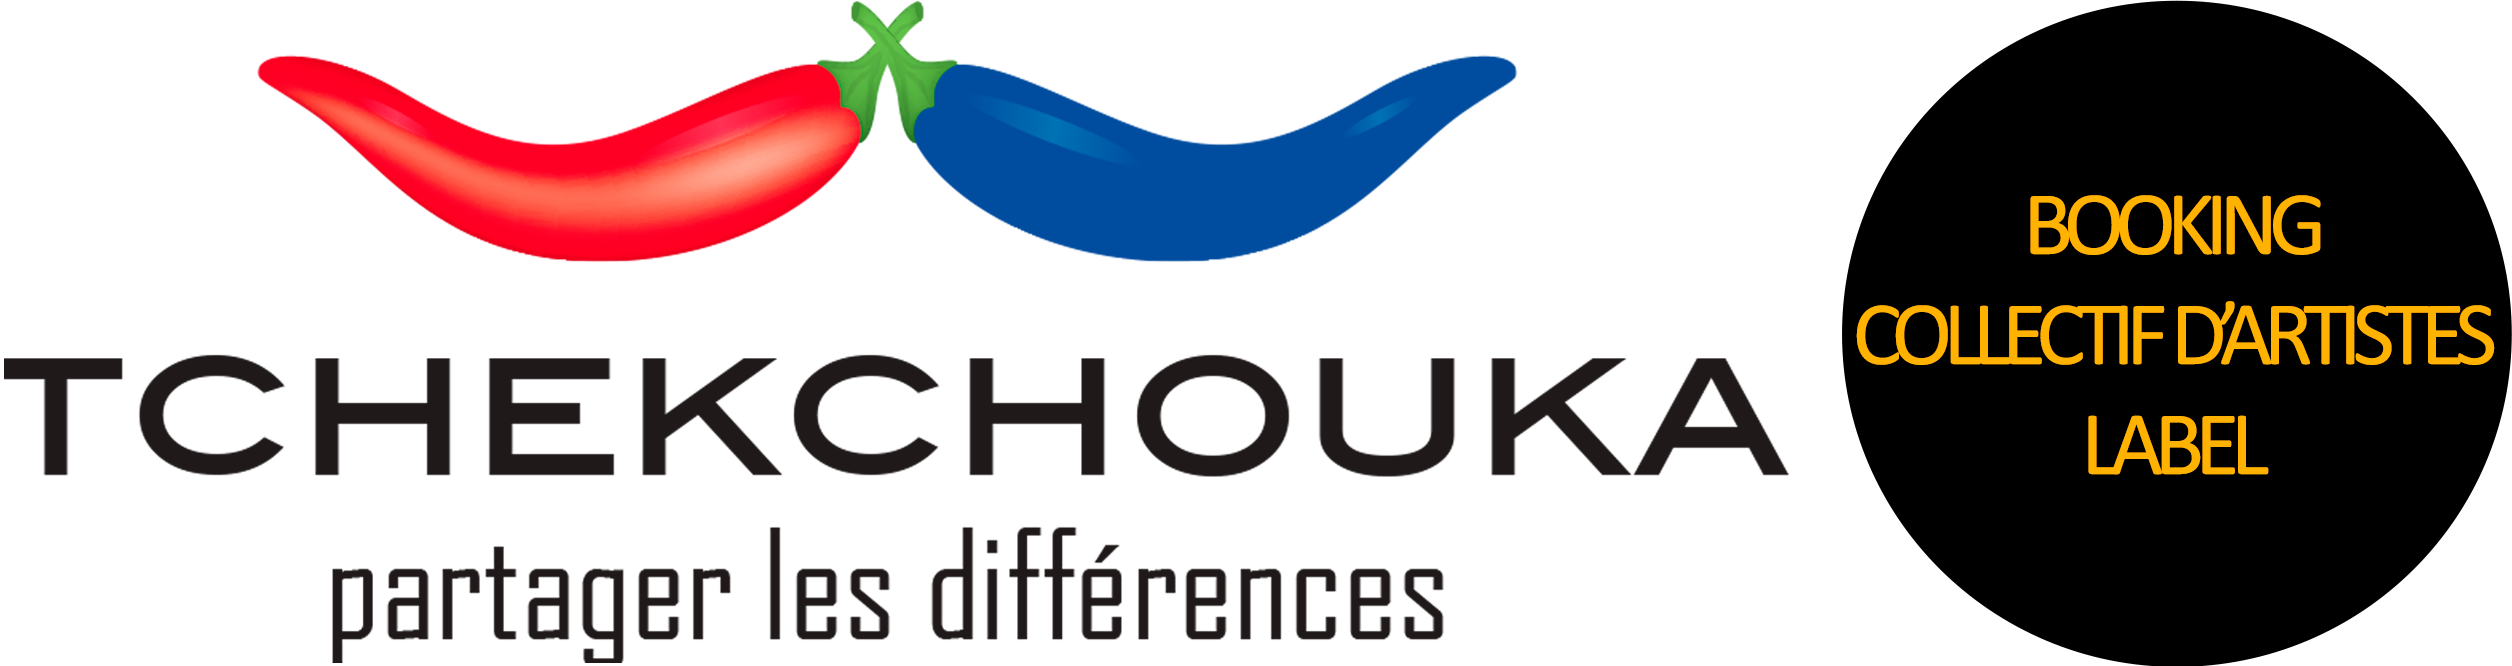 Tchekchouka - Booking Label